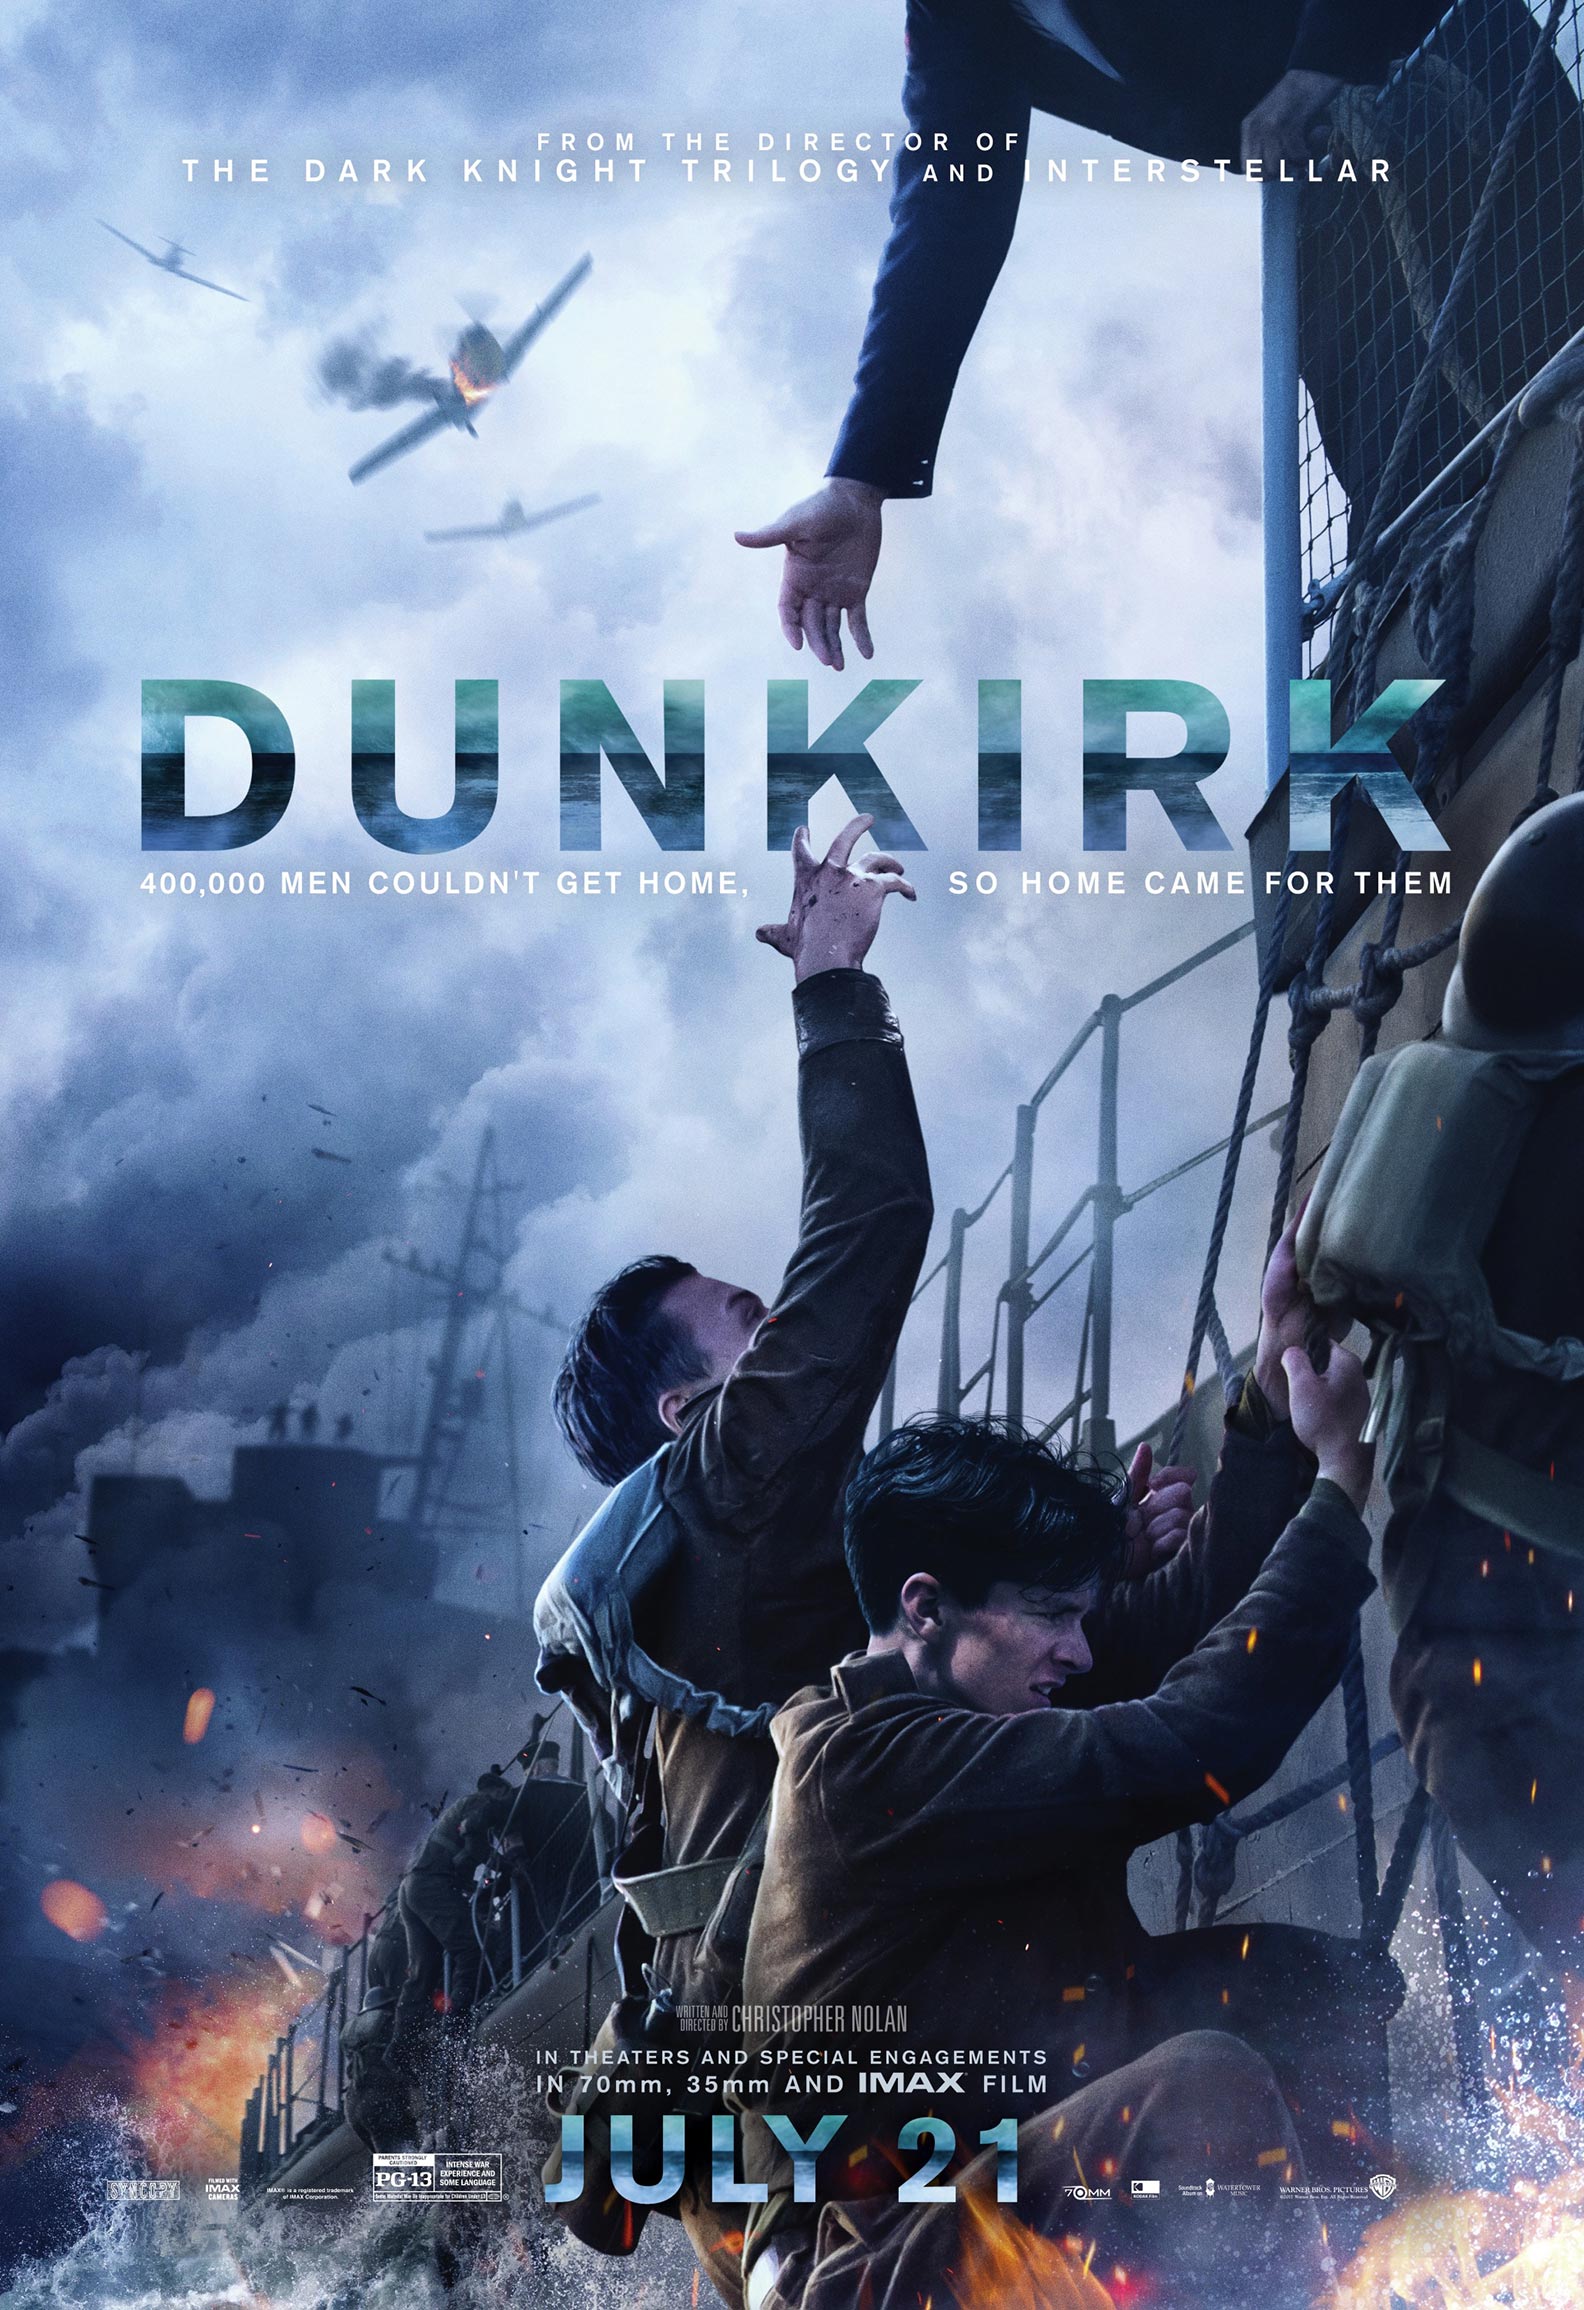 Dunkirk 2017- 4k quality